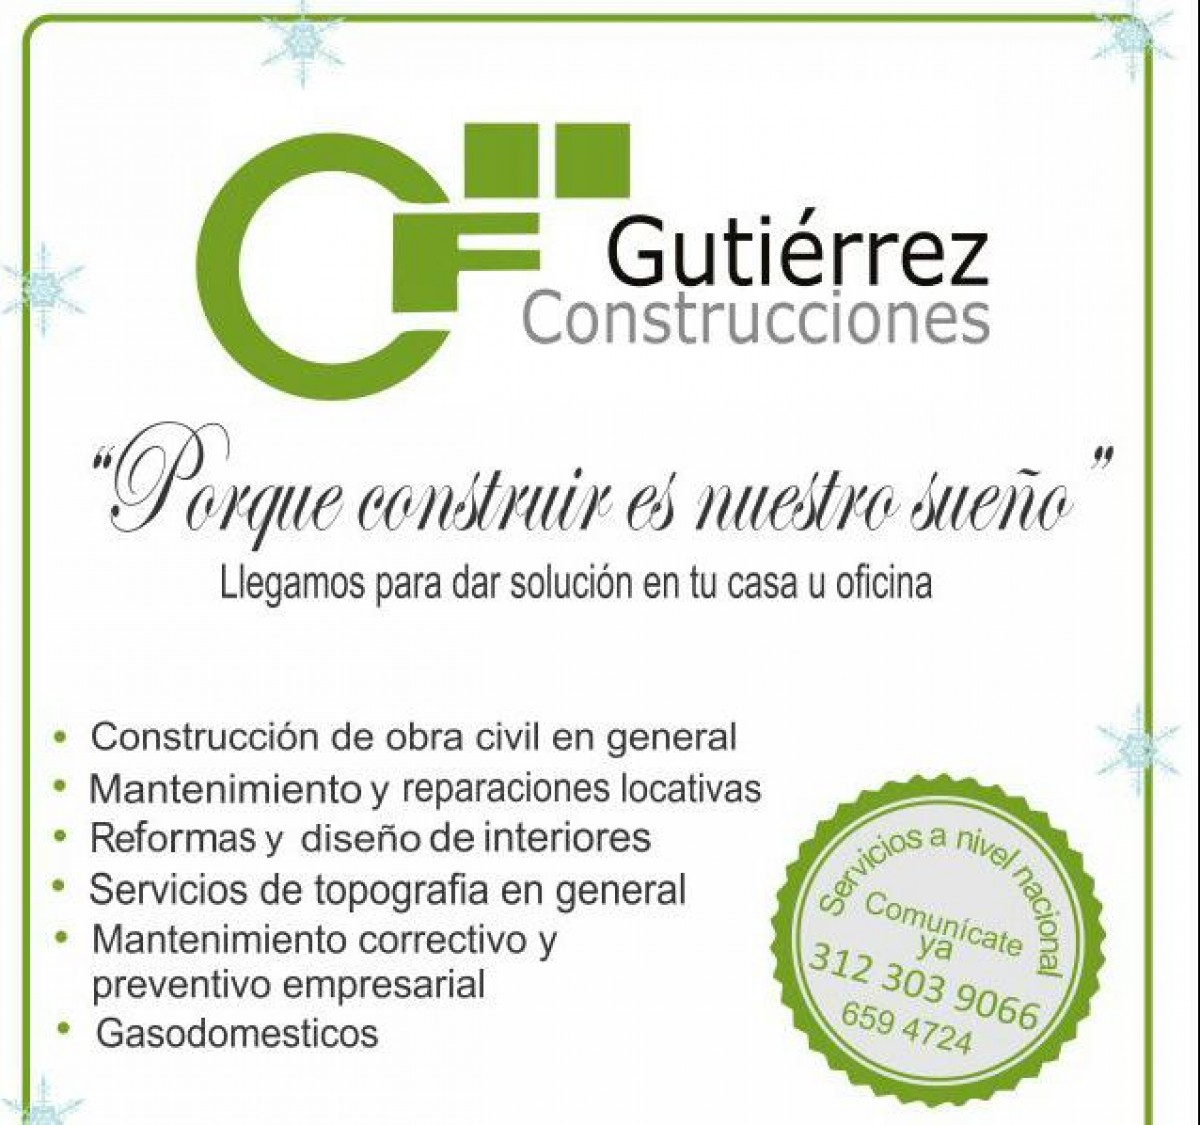 CF GUTIERREZ CONSTRUCCIONES SAS